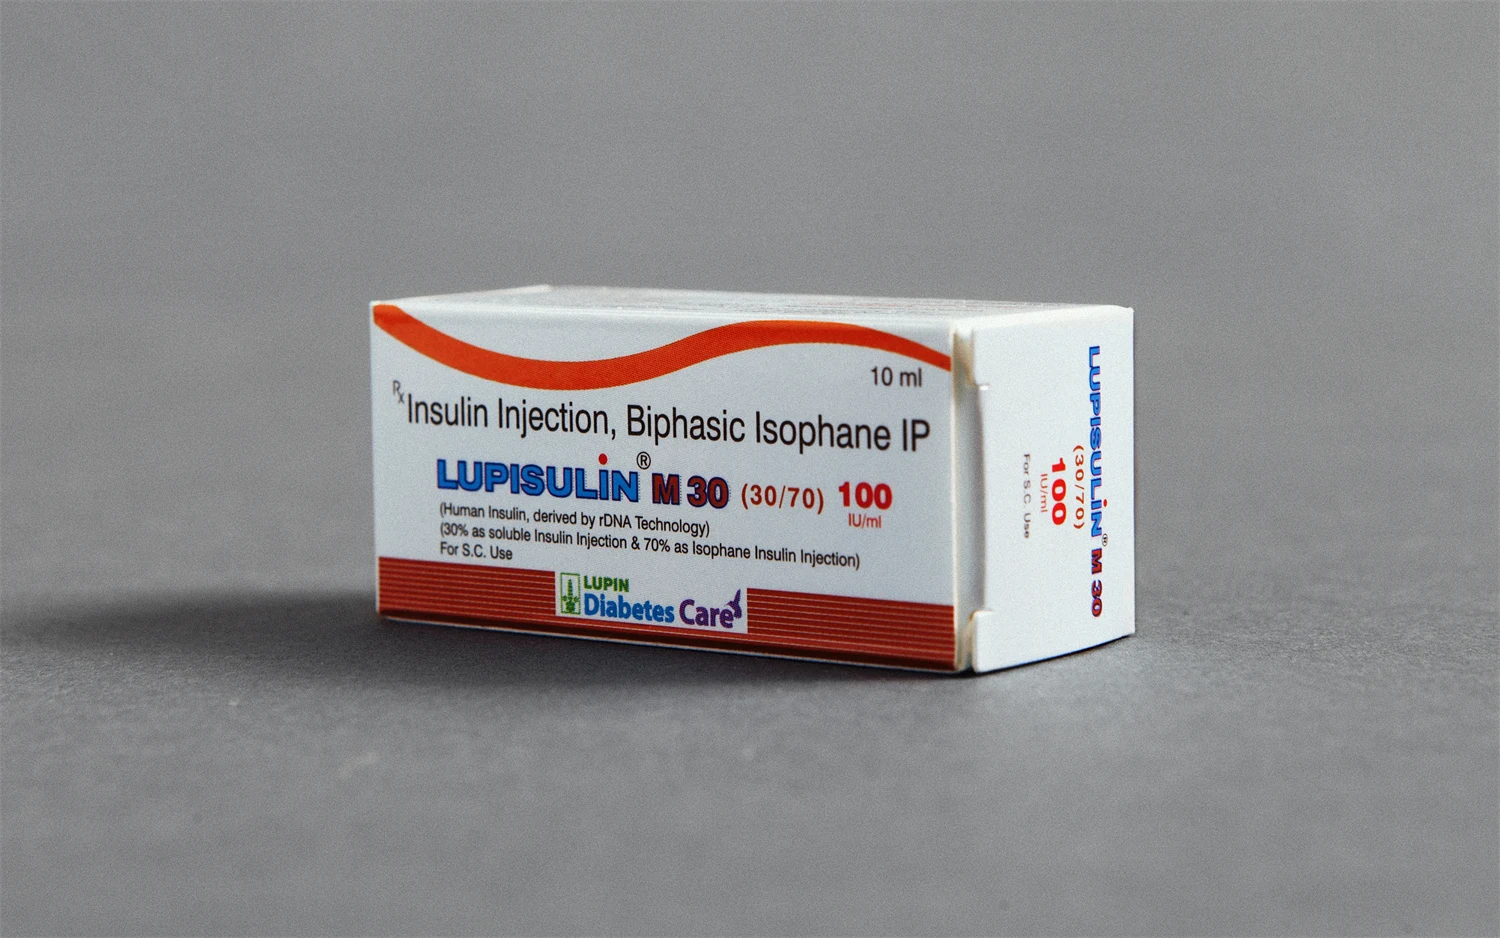 pharma packaging for lupin ltd